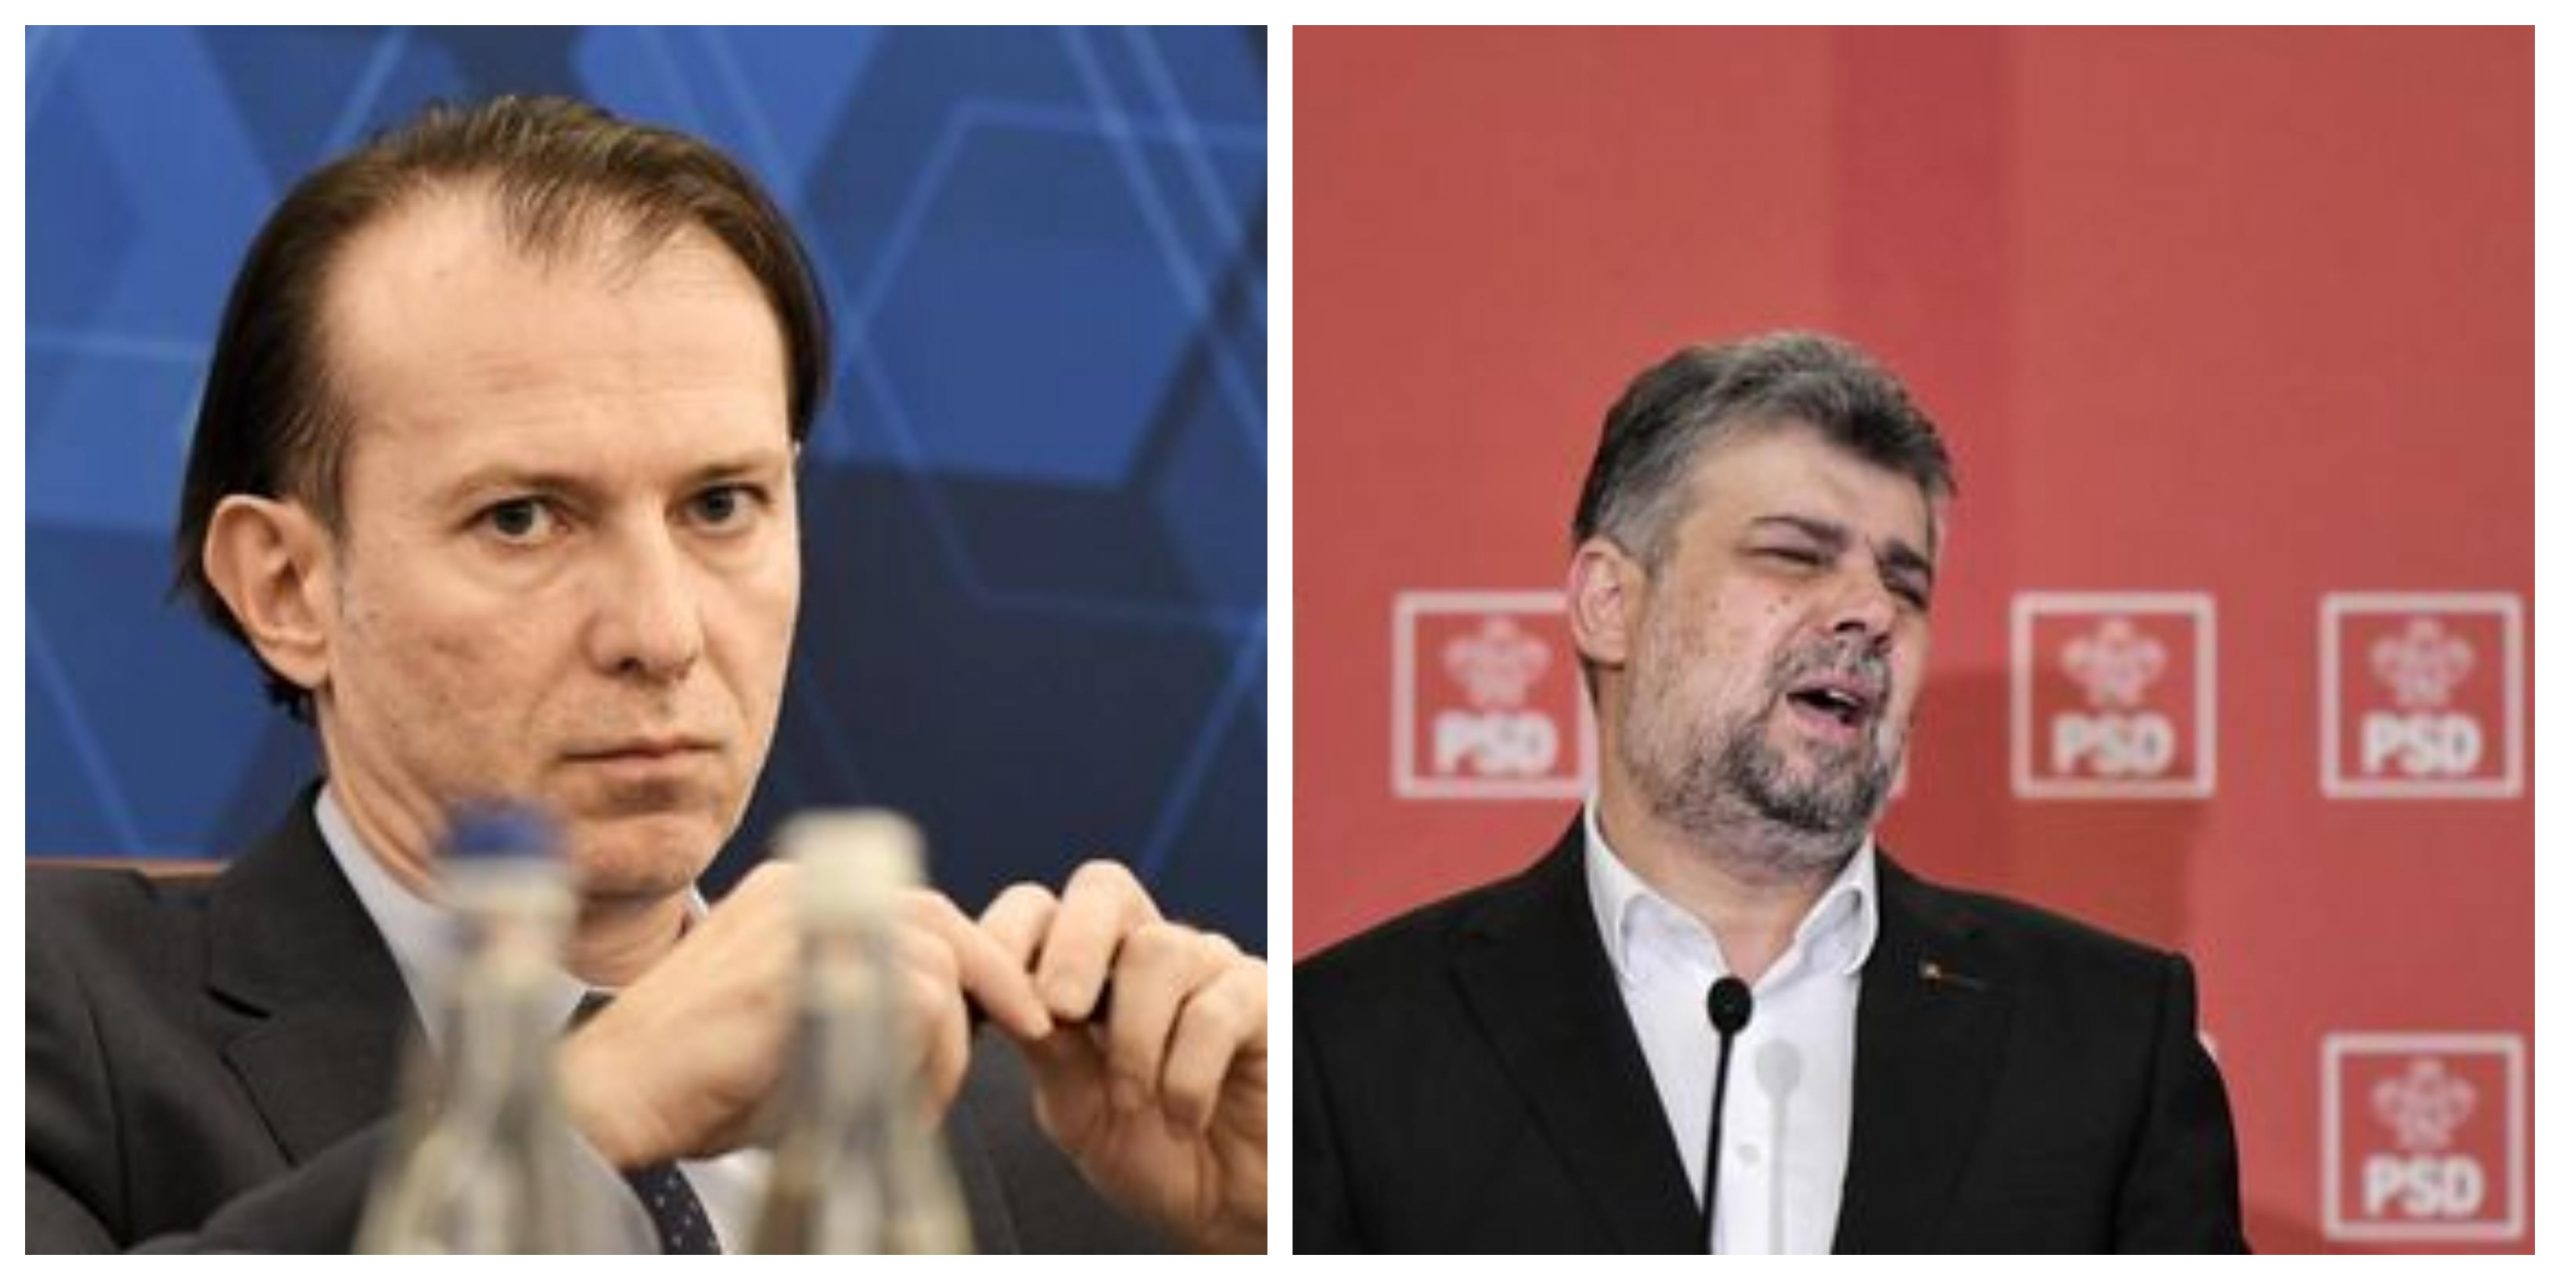 Atacarea Ucrainei, condamnată de liderii politici din Coaliția de Guvernare PNL – PSD